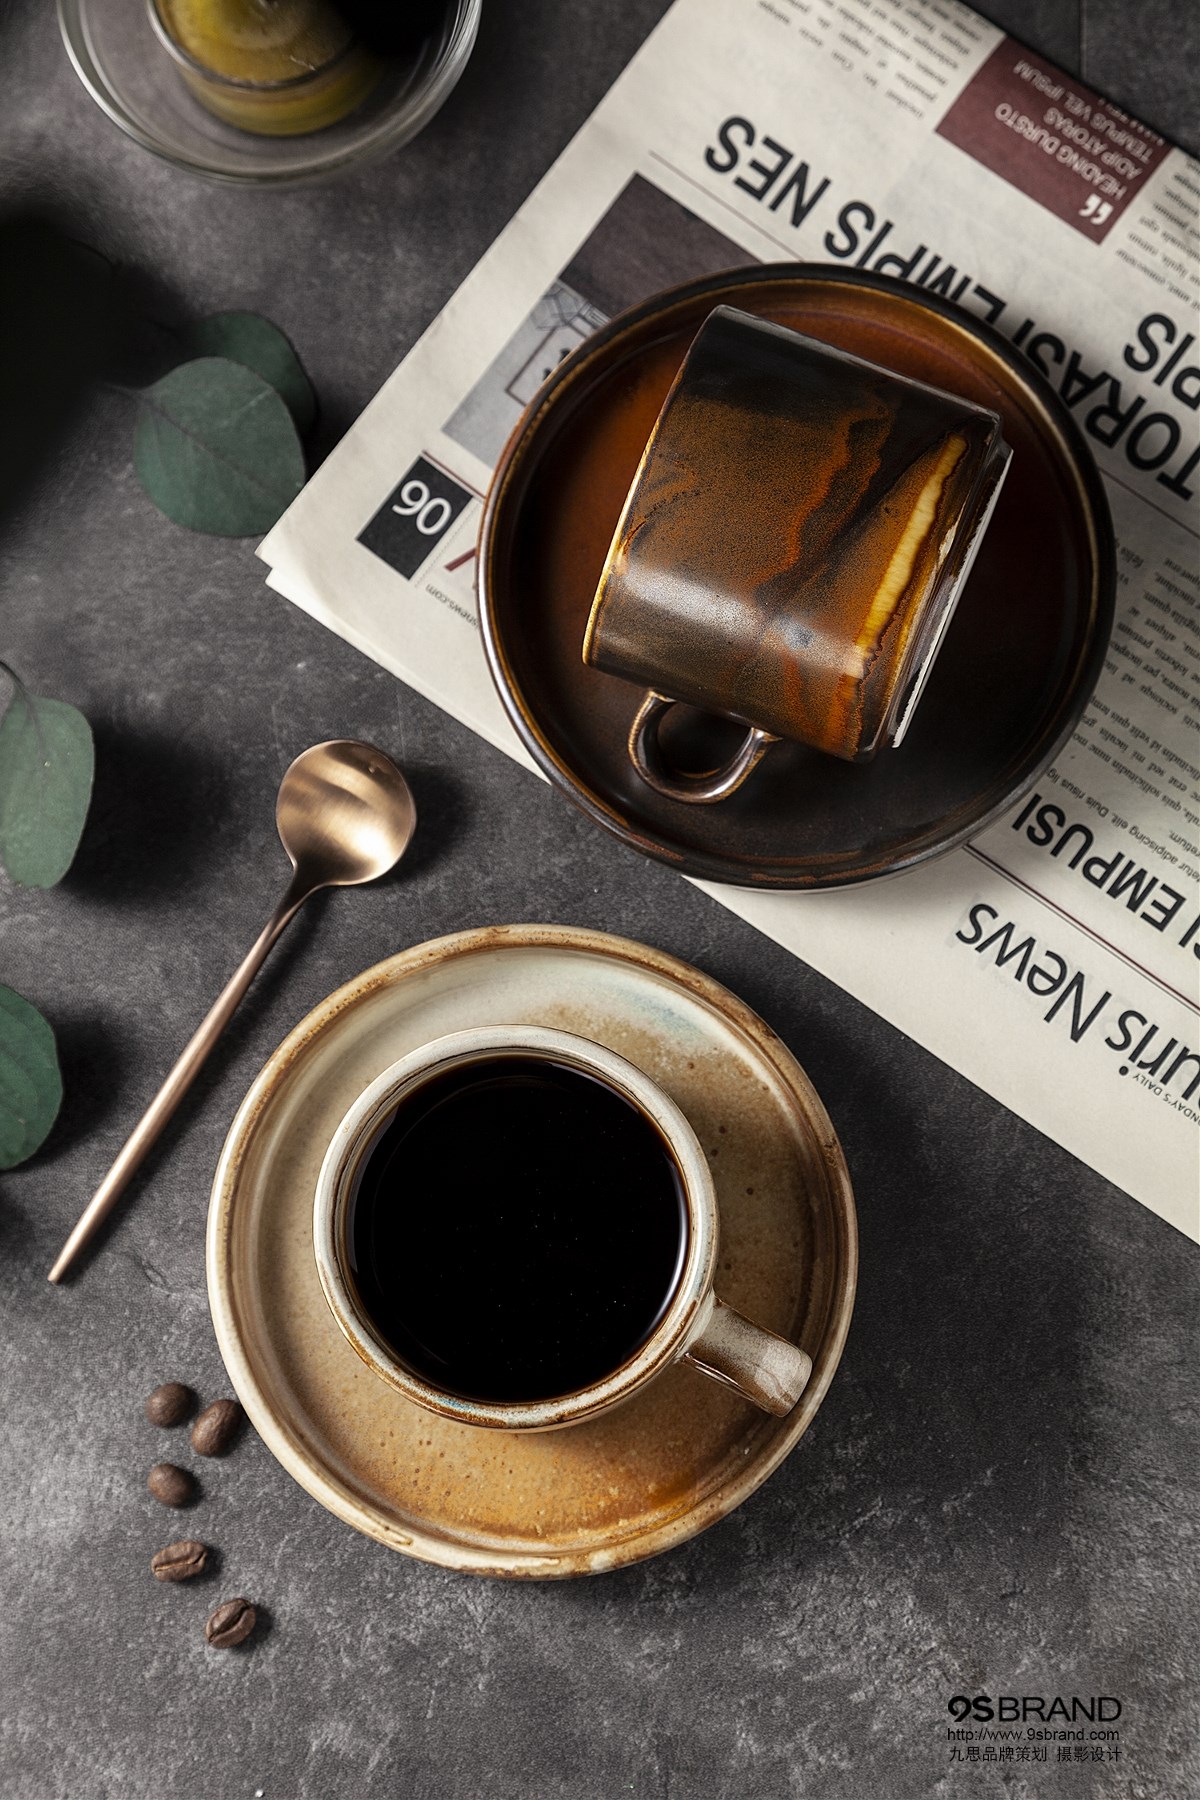 一组复古咖啡杯系列广告拍摄鉴赏 九思品牌摄影